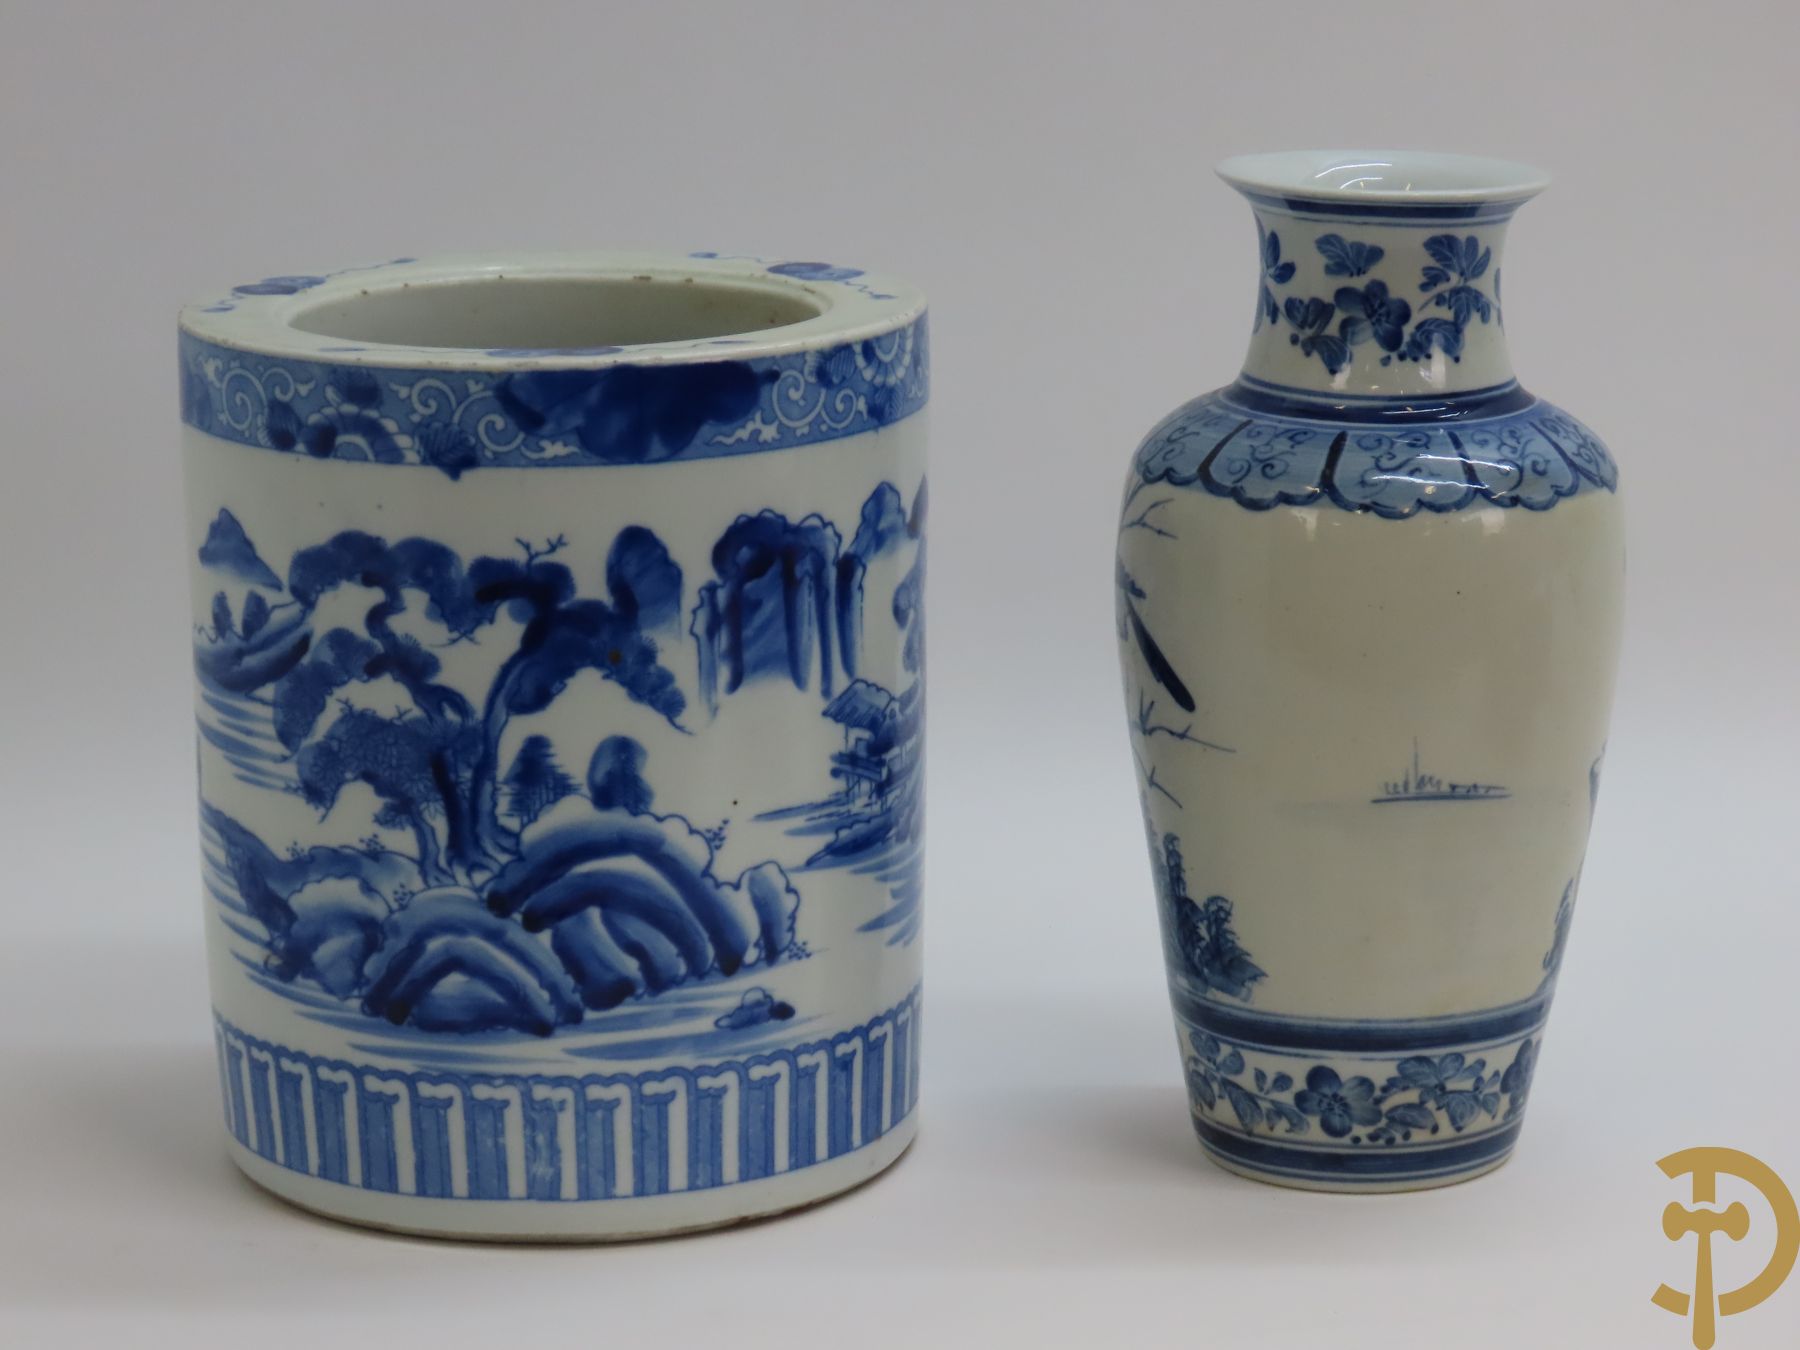 Porseleinen Aziatische wierookbrander met landschapsdecor + Aziatische vaas in blauw/wit porselein met natuurtaferelen van fauna en flora